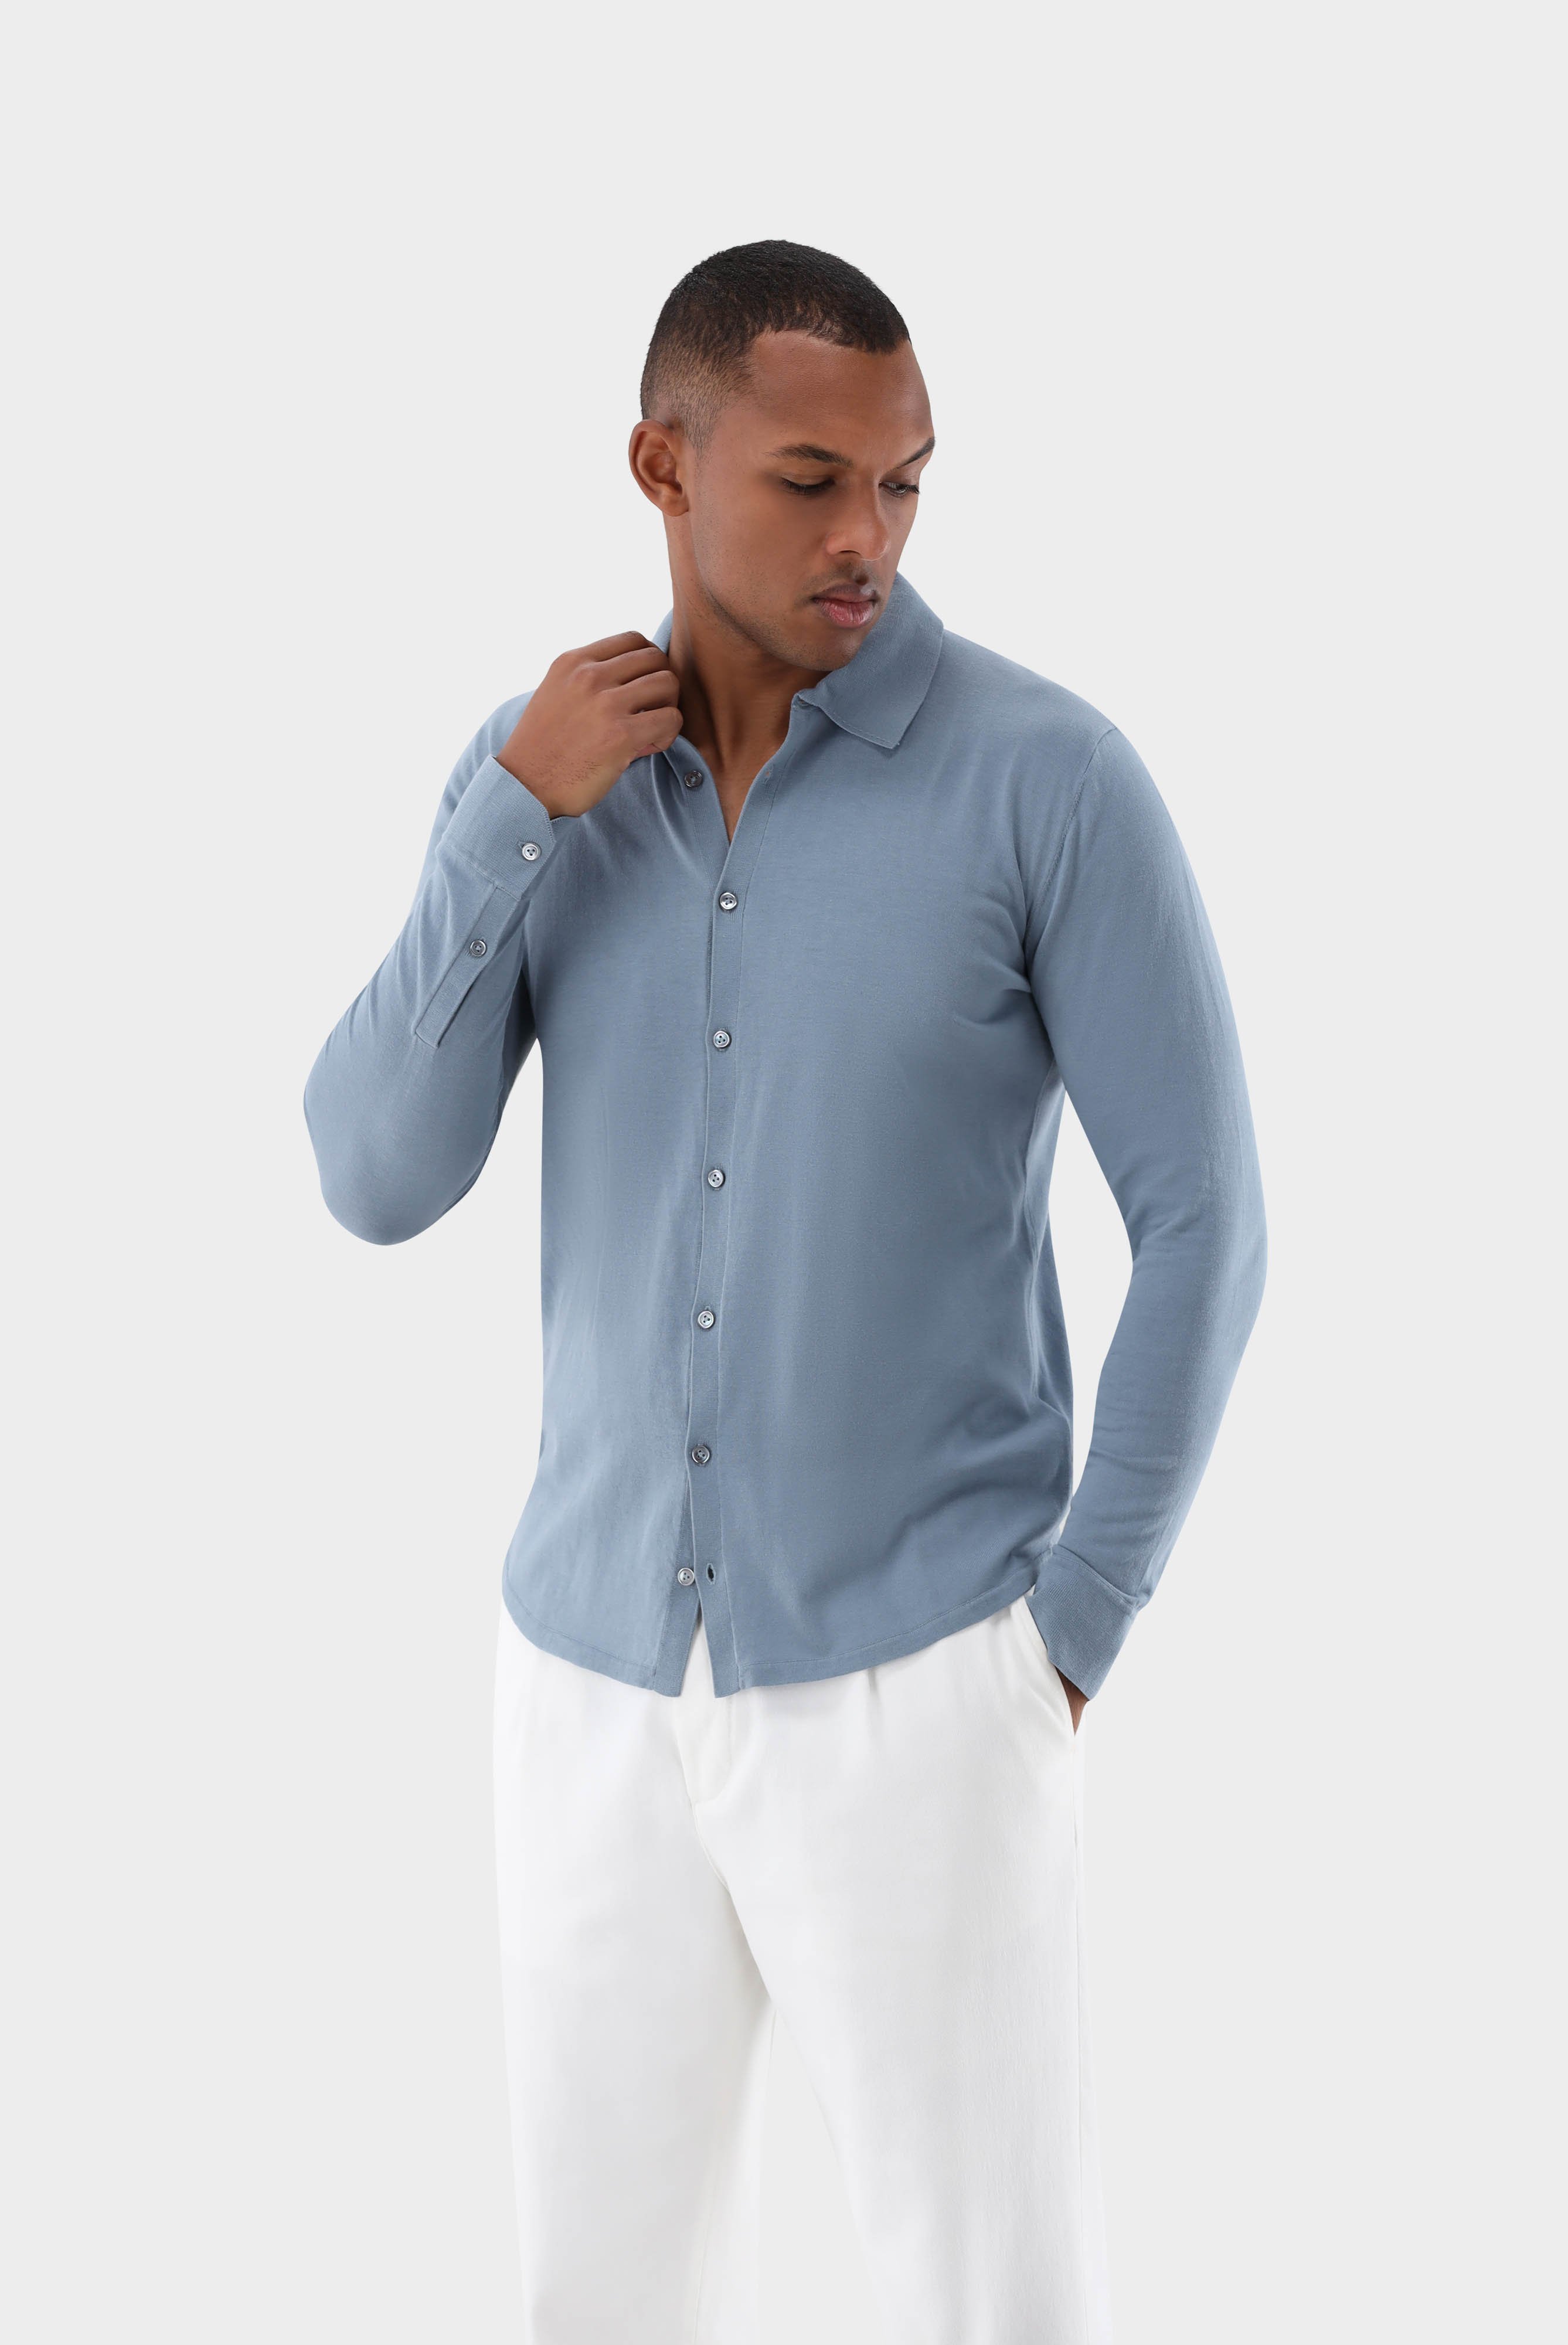 Bügelleichte Hemden+Strick Hemd aus Air Cotton+82.8611..S00174.730.XS